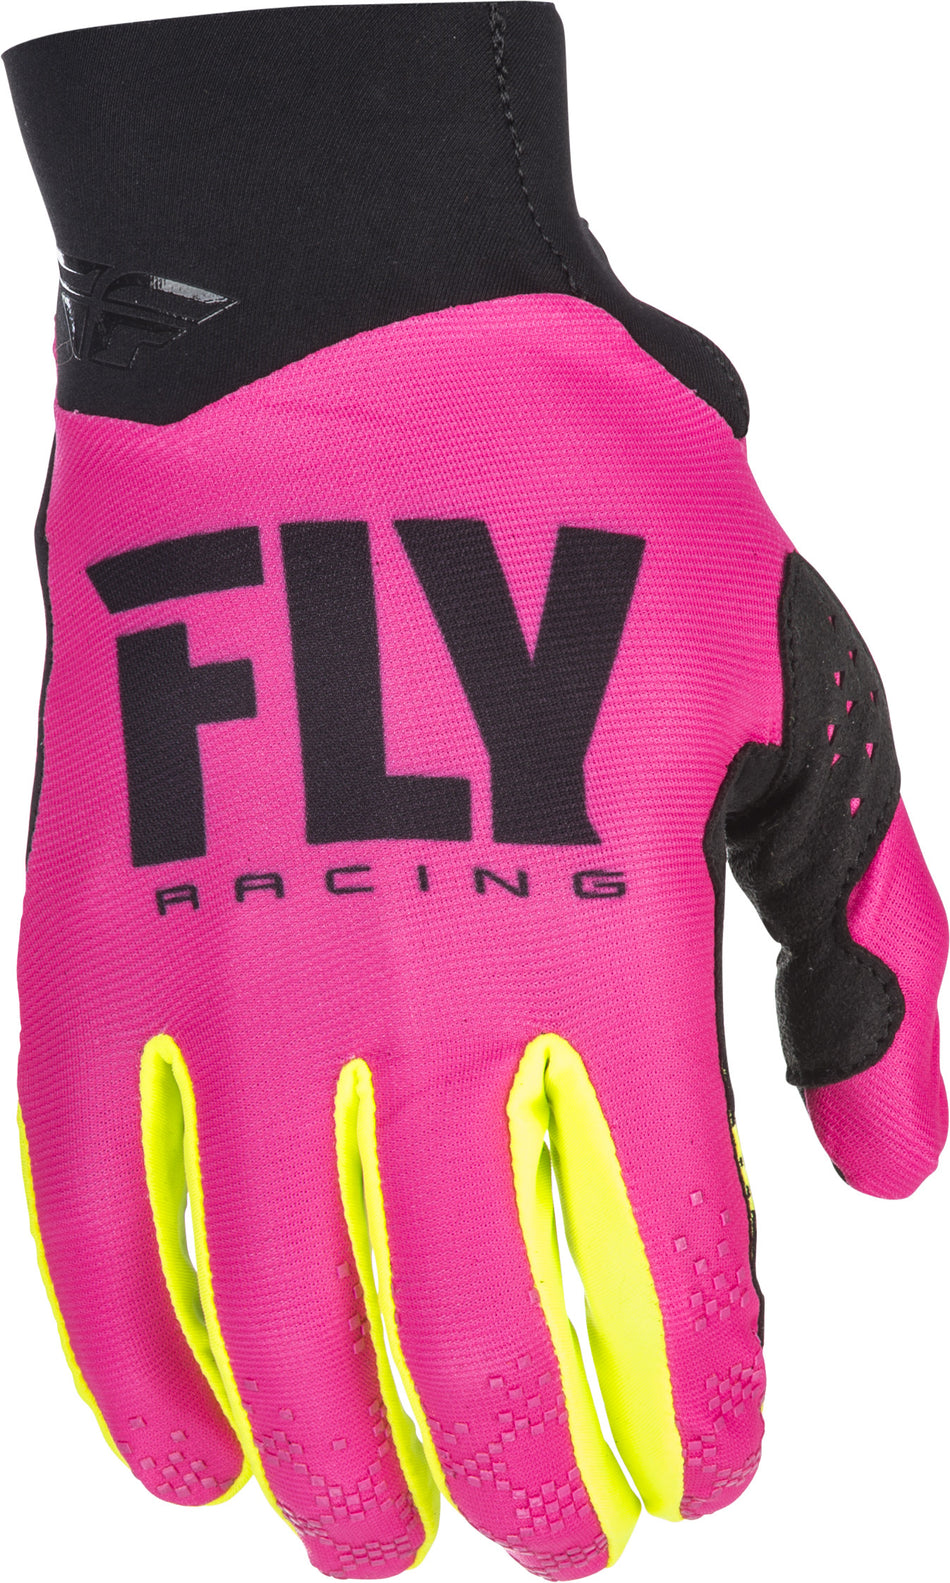 FLY RACING Pro Lite Gloves Neon Pink/Hi-Vis Sz 8 371-81708